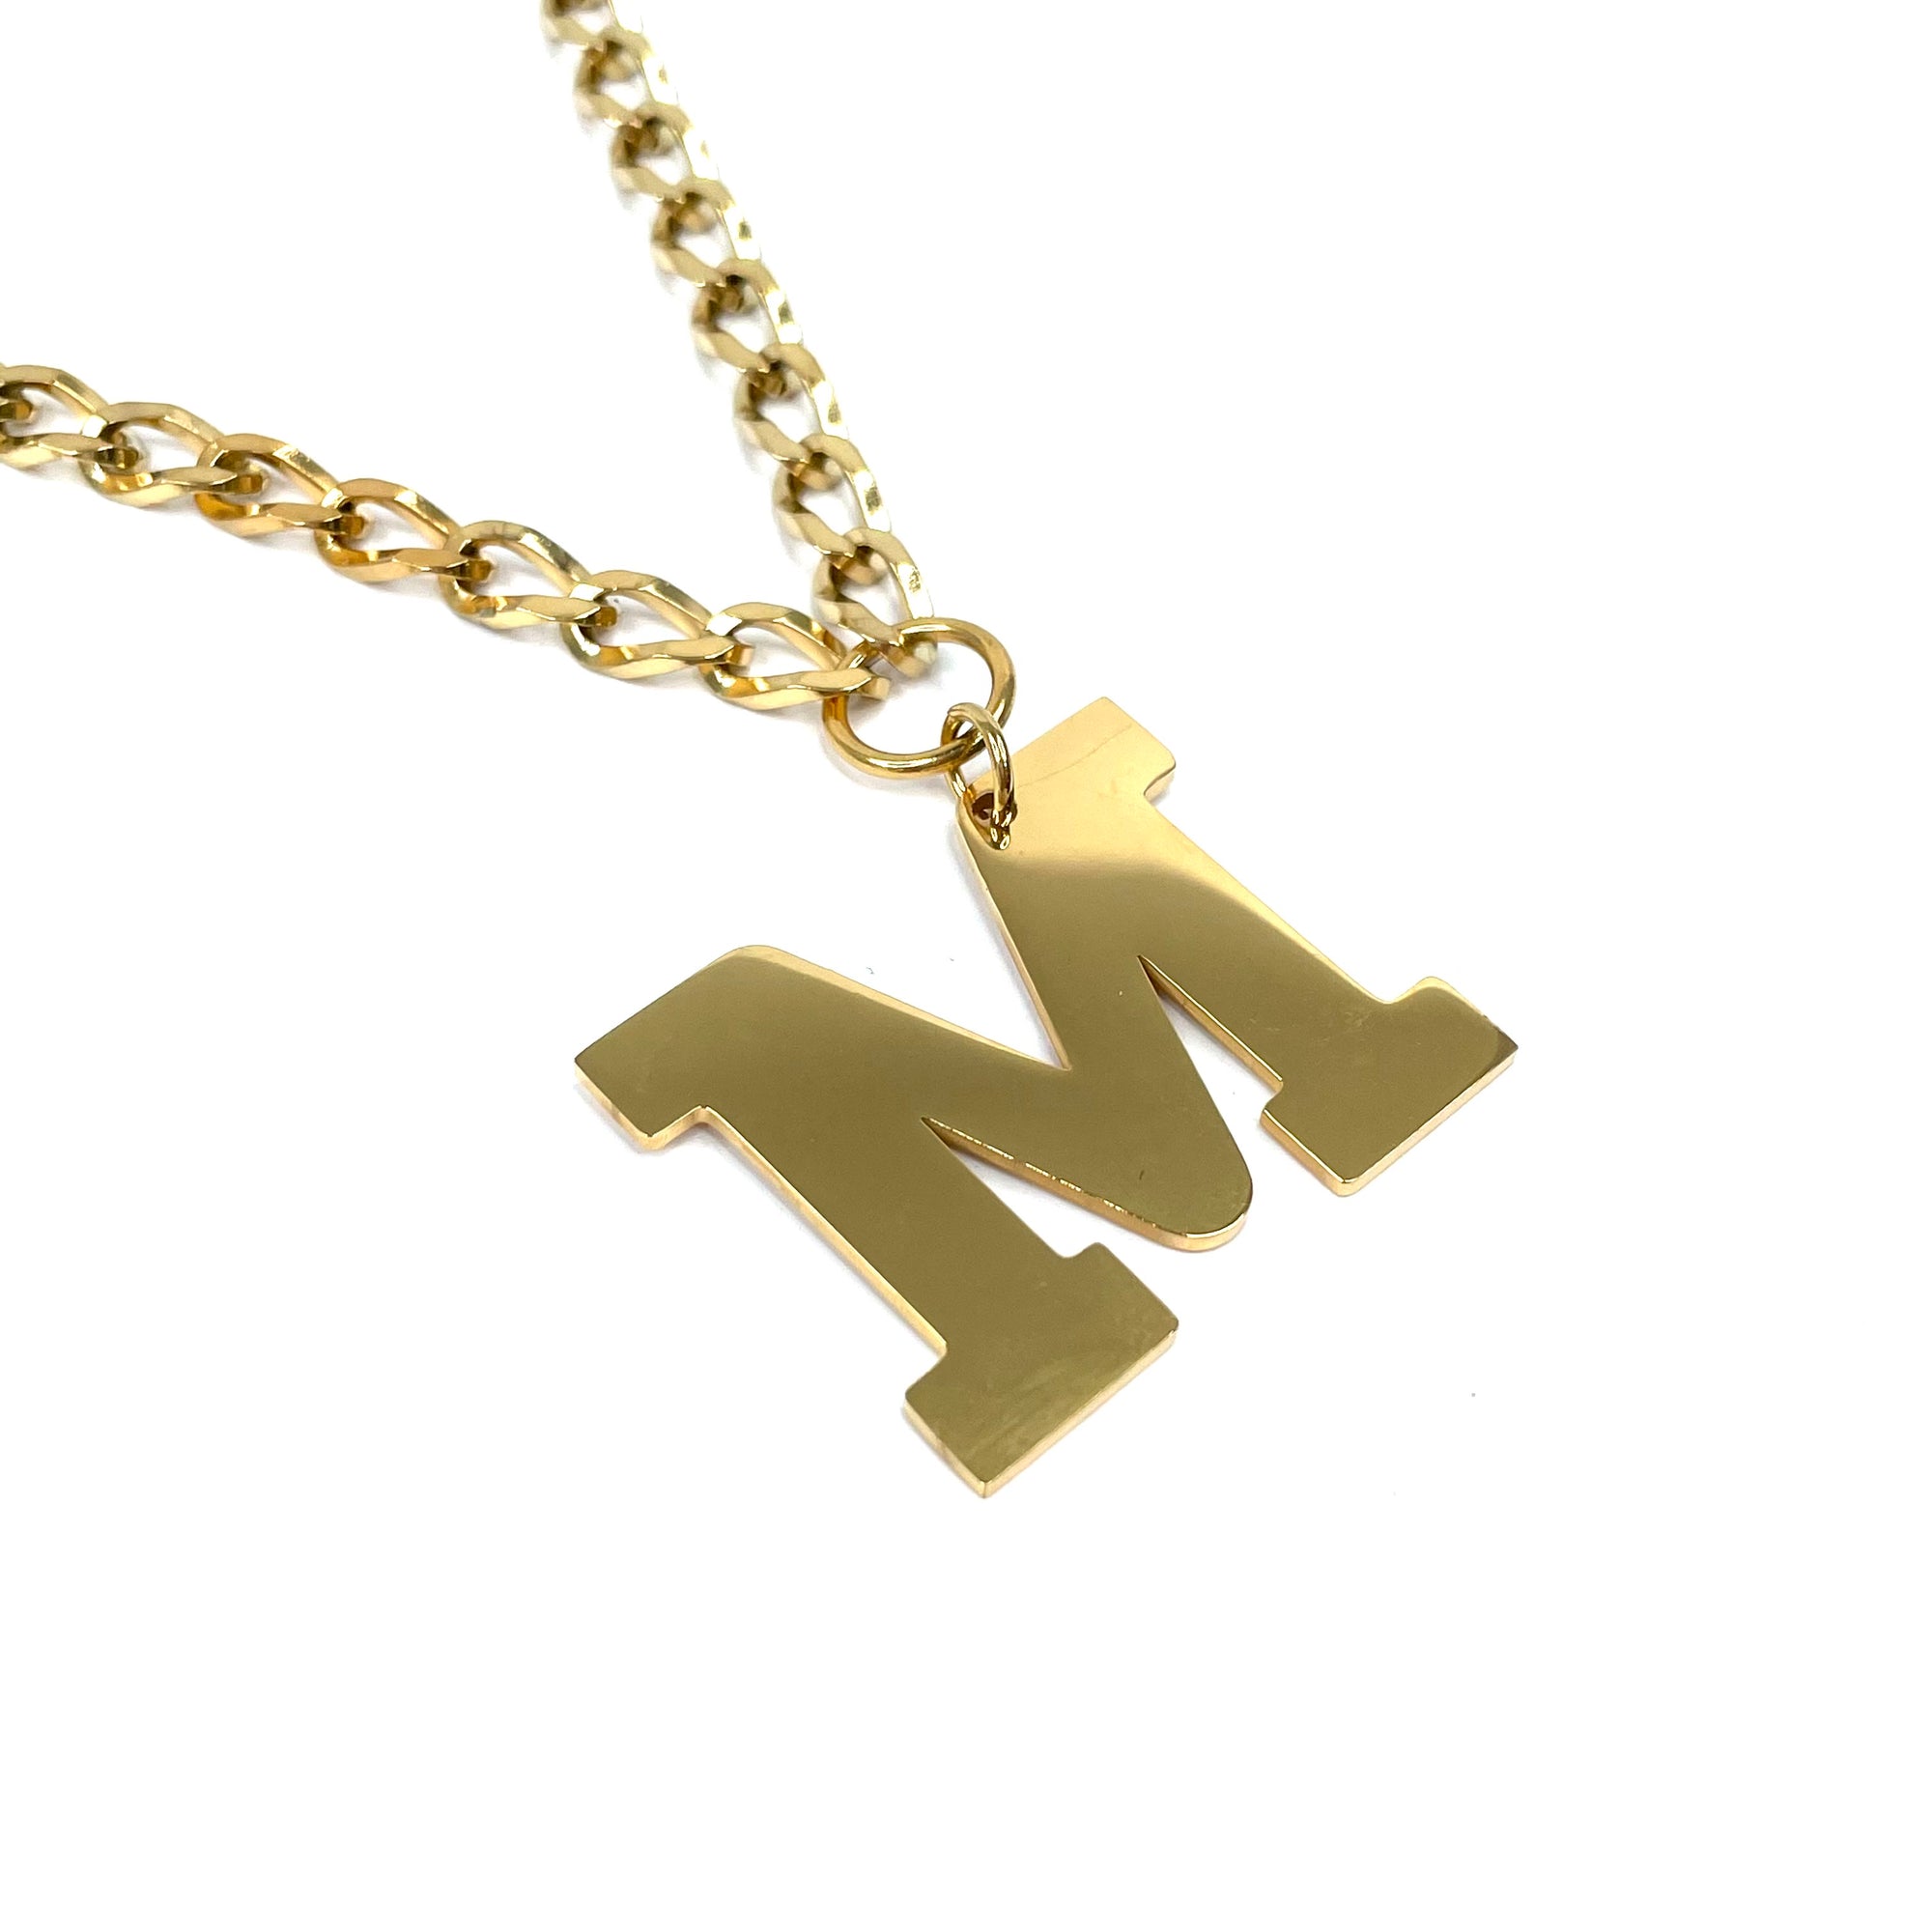 Lettering Legend Necklace Necklaces Cerese D, Inc. Gold M 